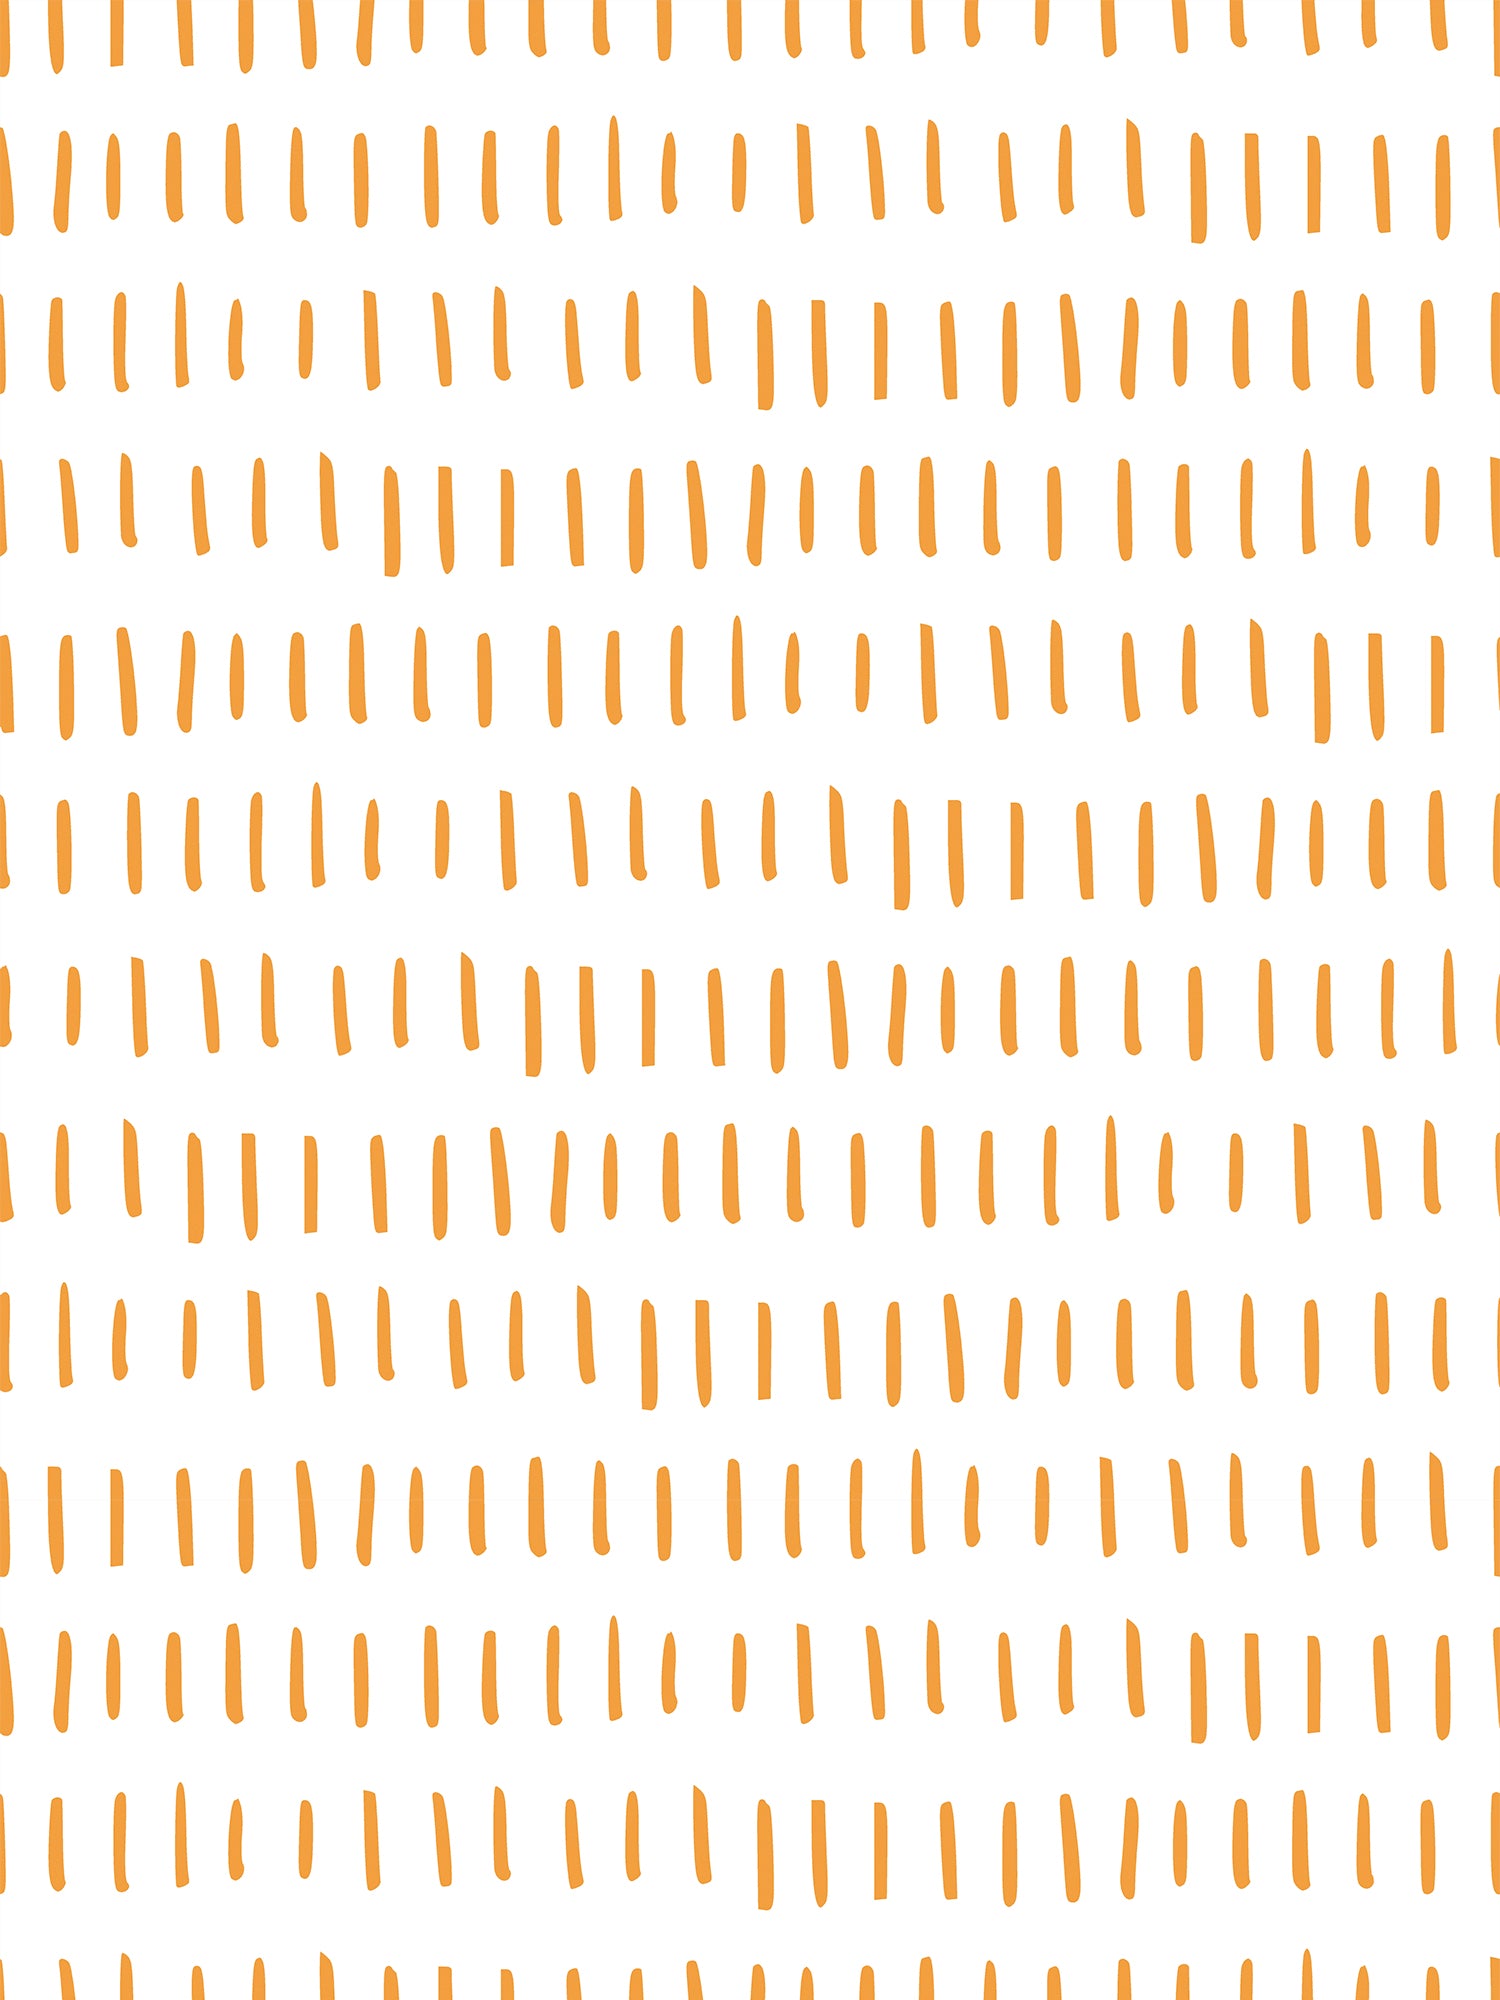 Lameller Tangerine - Orange & White Vertical Lines Scandi Wallpaper